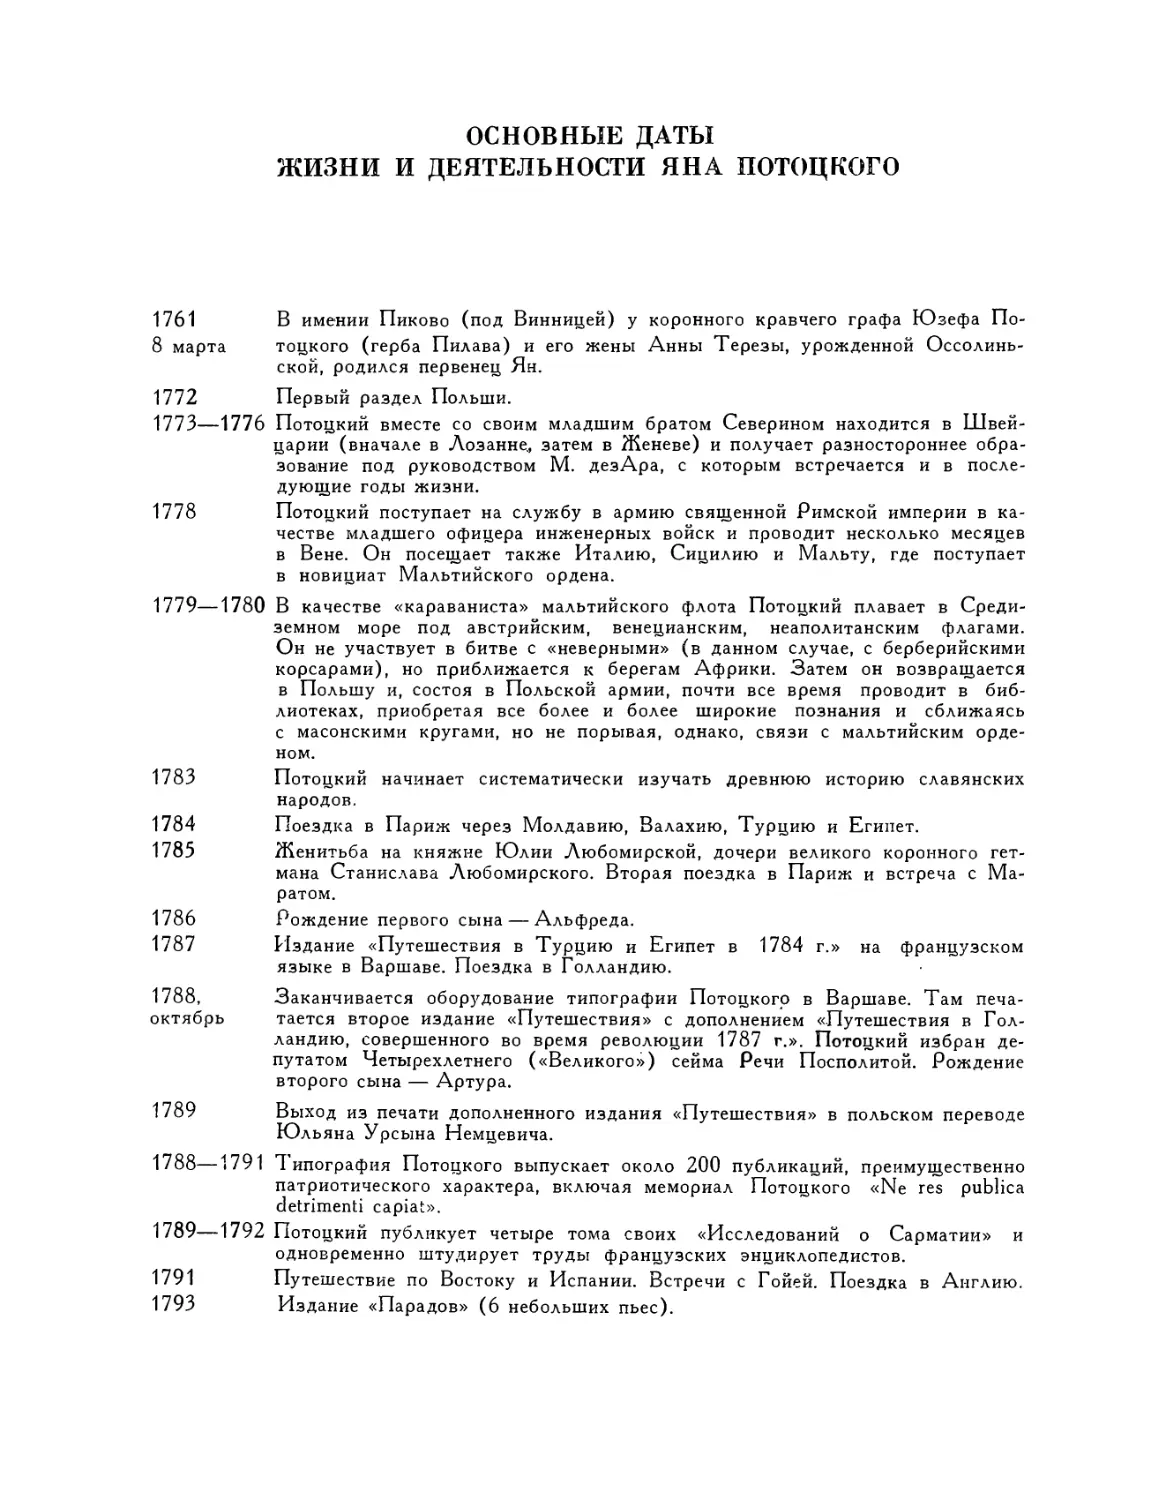 Основные даты жизни и деятельности Яна Потоцкого